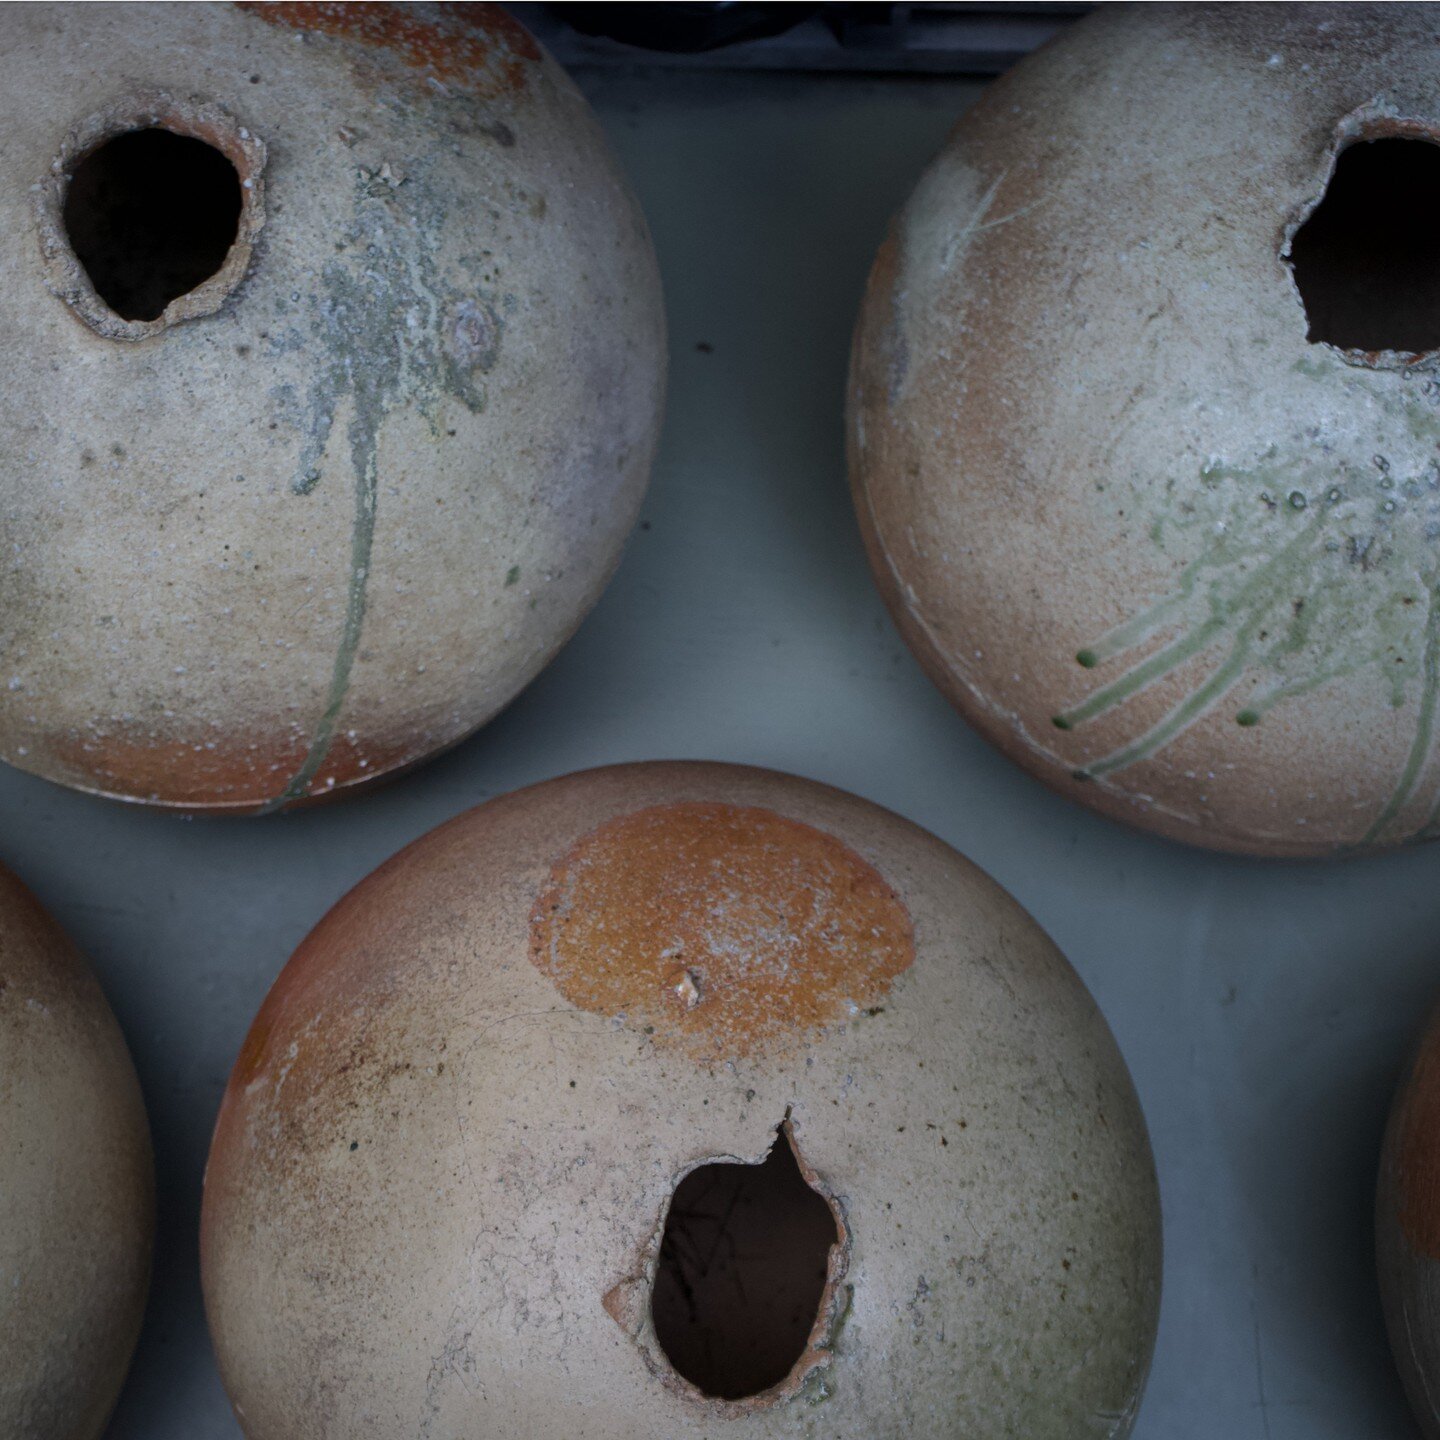 丸壺(大)　2011年　辻村史朗
実物も店頭でご覧いただけます。

Large Sphere Tsubo vase 2011, by Shiro Tsujimura.
The actual piece can be seen and avilable in the store.

#shirotsujimura #辻村史朗 #tsujimurashiro #大壺 #largevase #tsubo #sphere